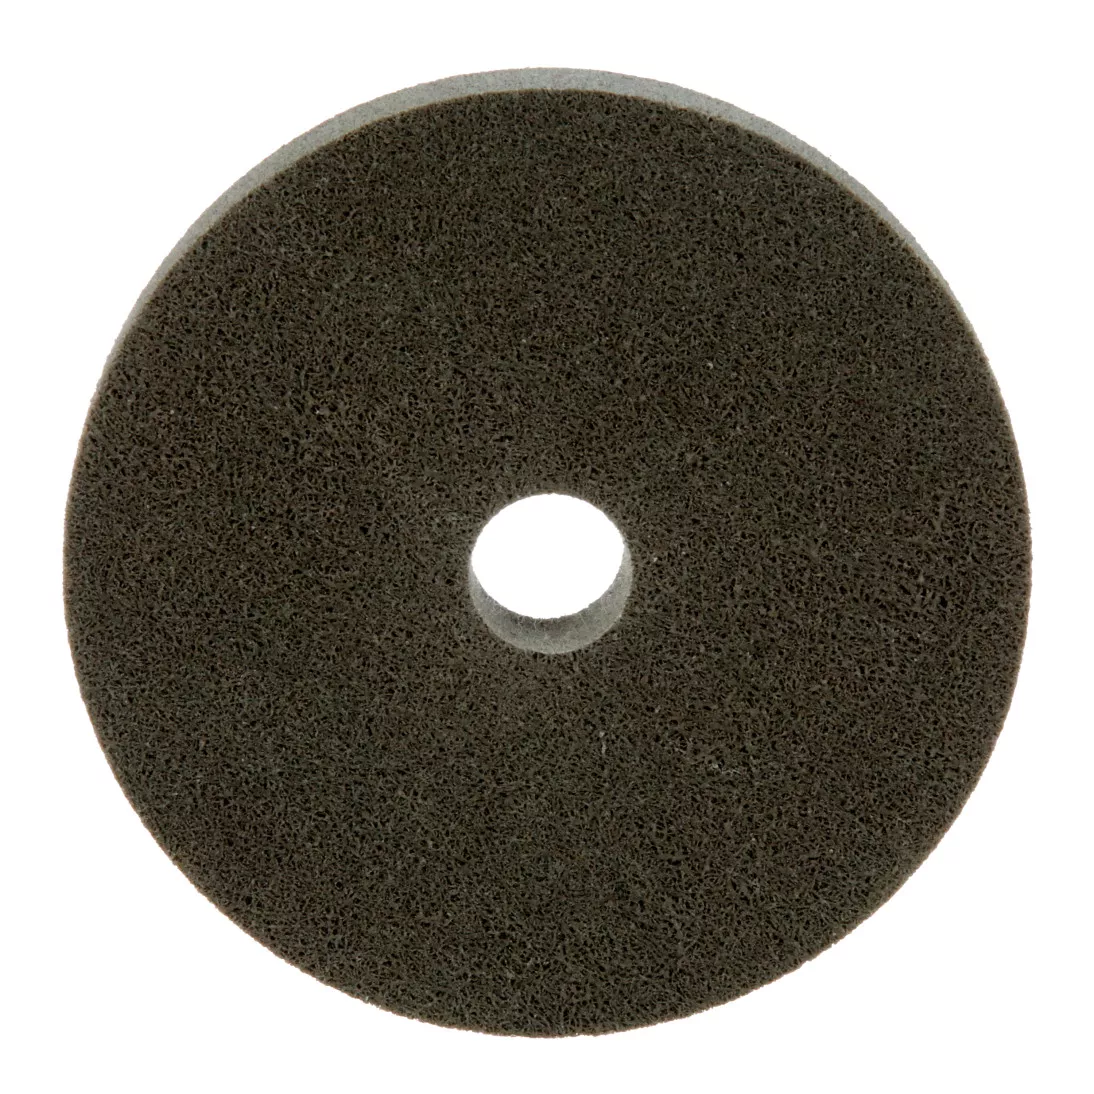 Standard Abrasives™ A/O Unitized Wheel 882178, 821 6 in x 1 in x 1 in, 3
ea/Case